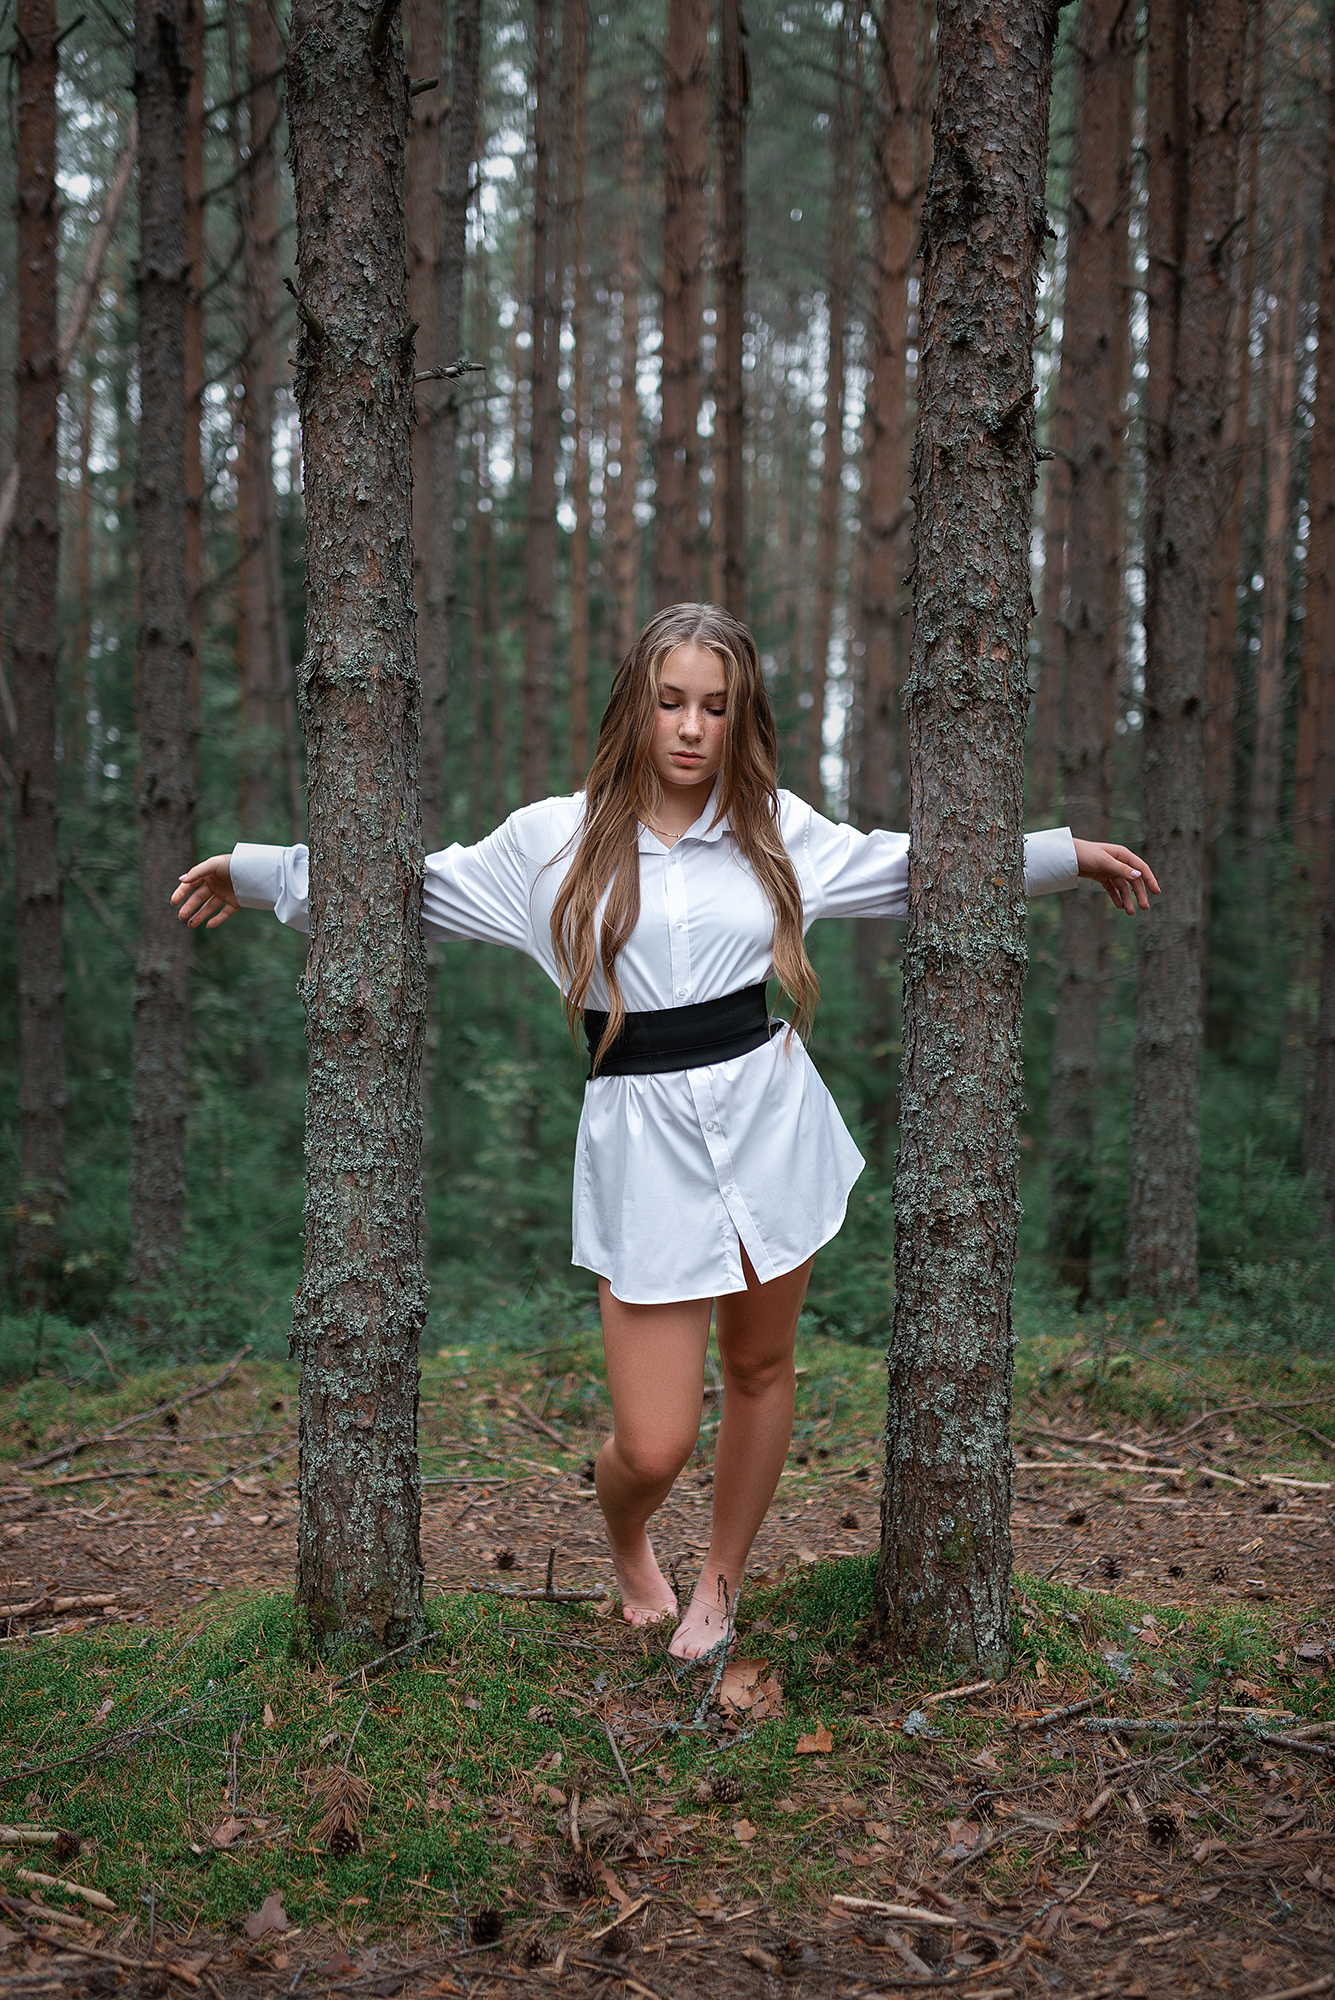 Татьяна Поликарпова - Женщины в лесу читать онлайн бесплатно